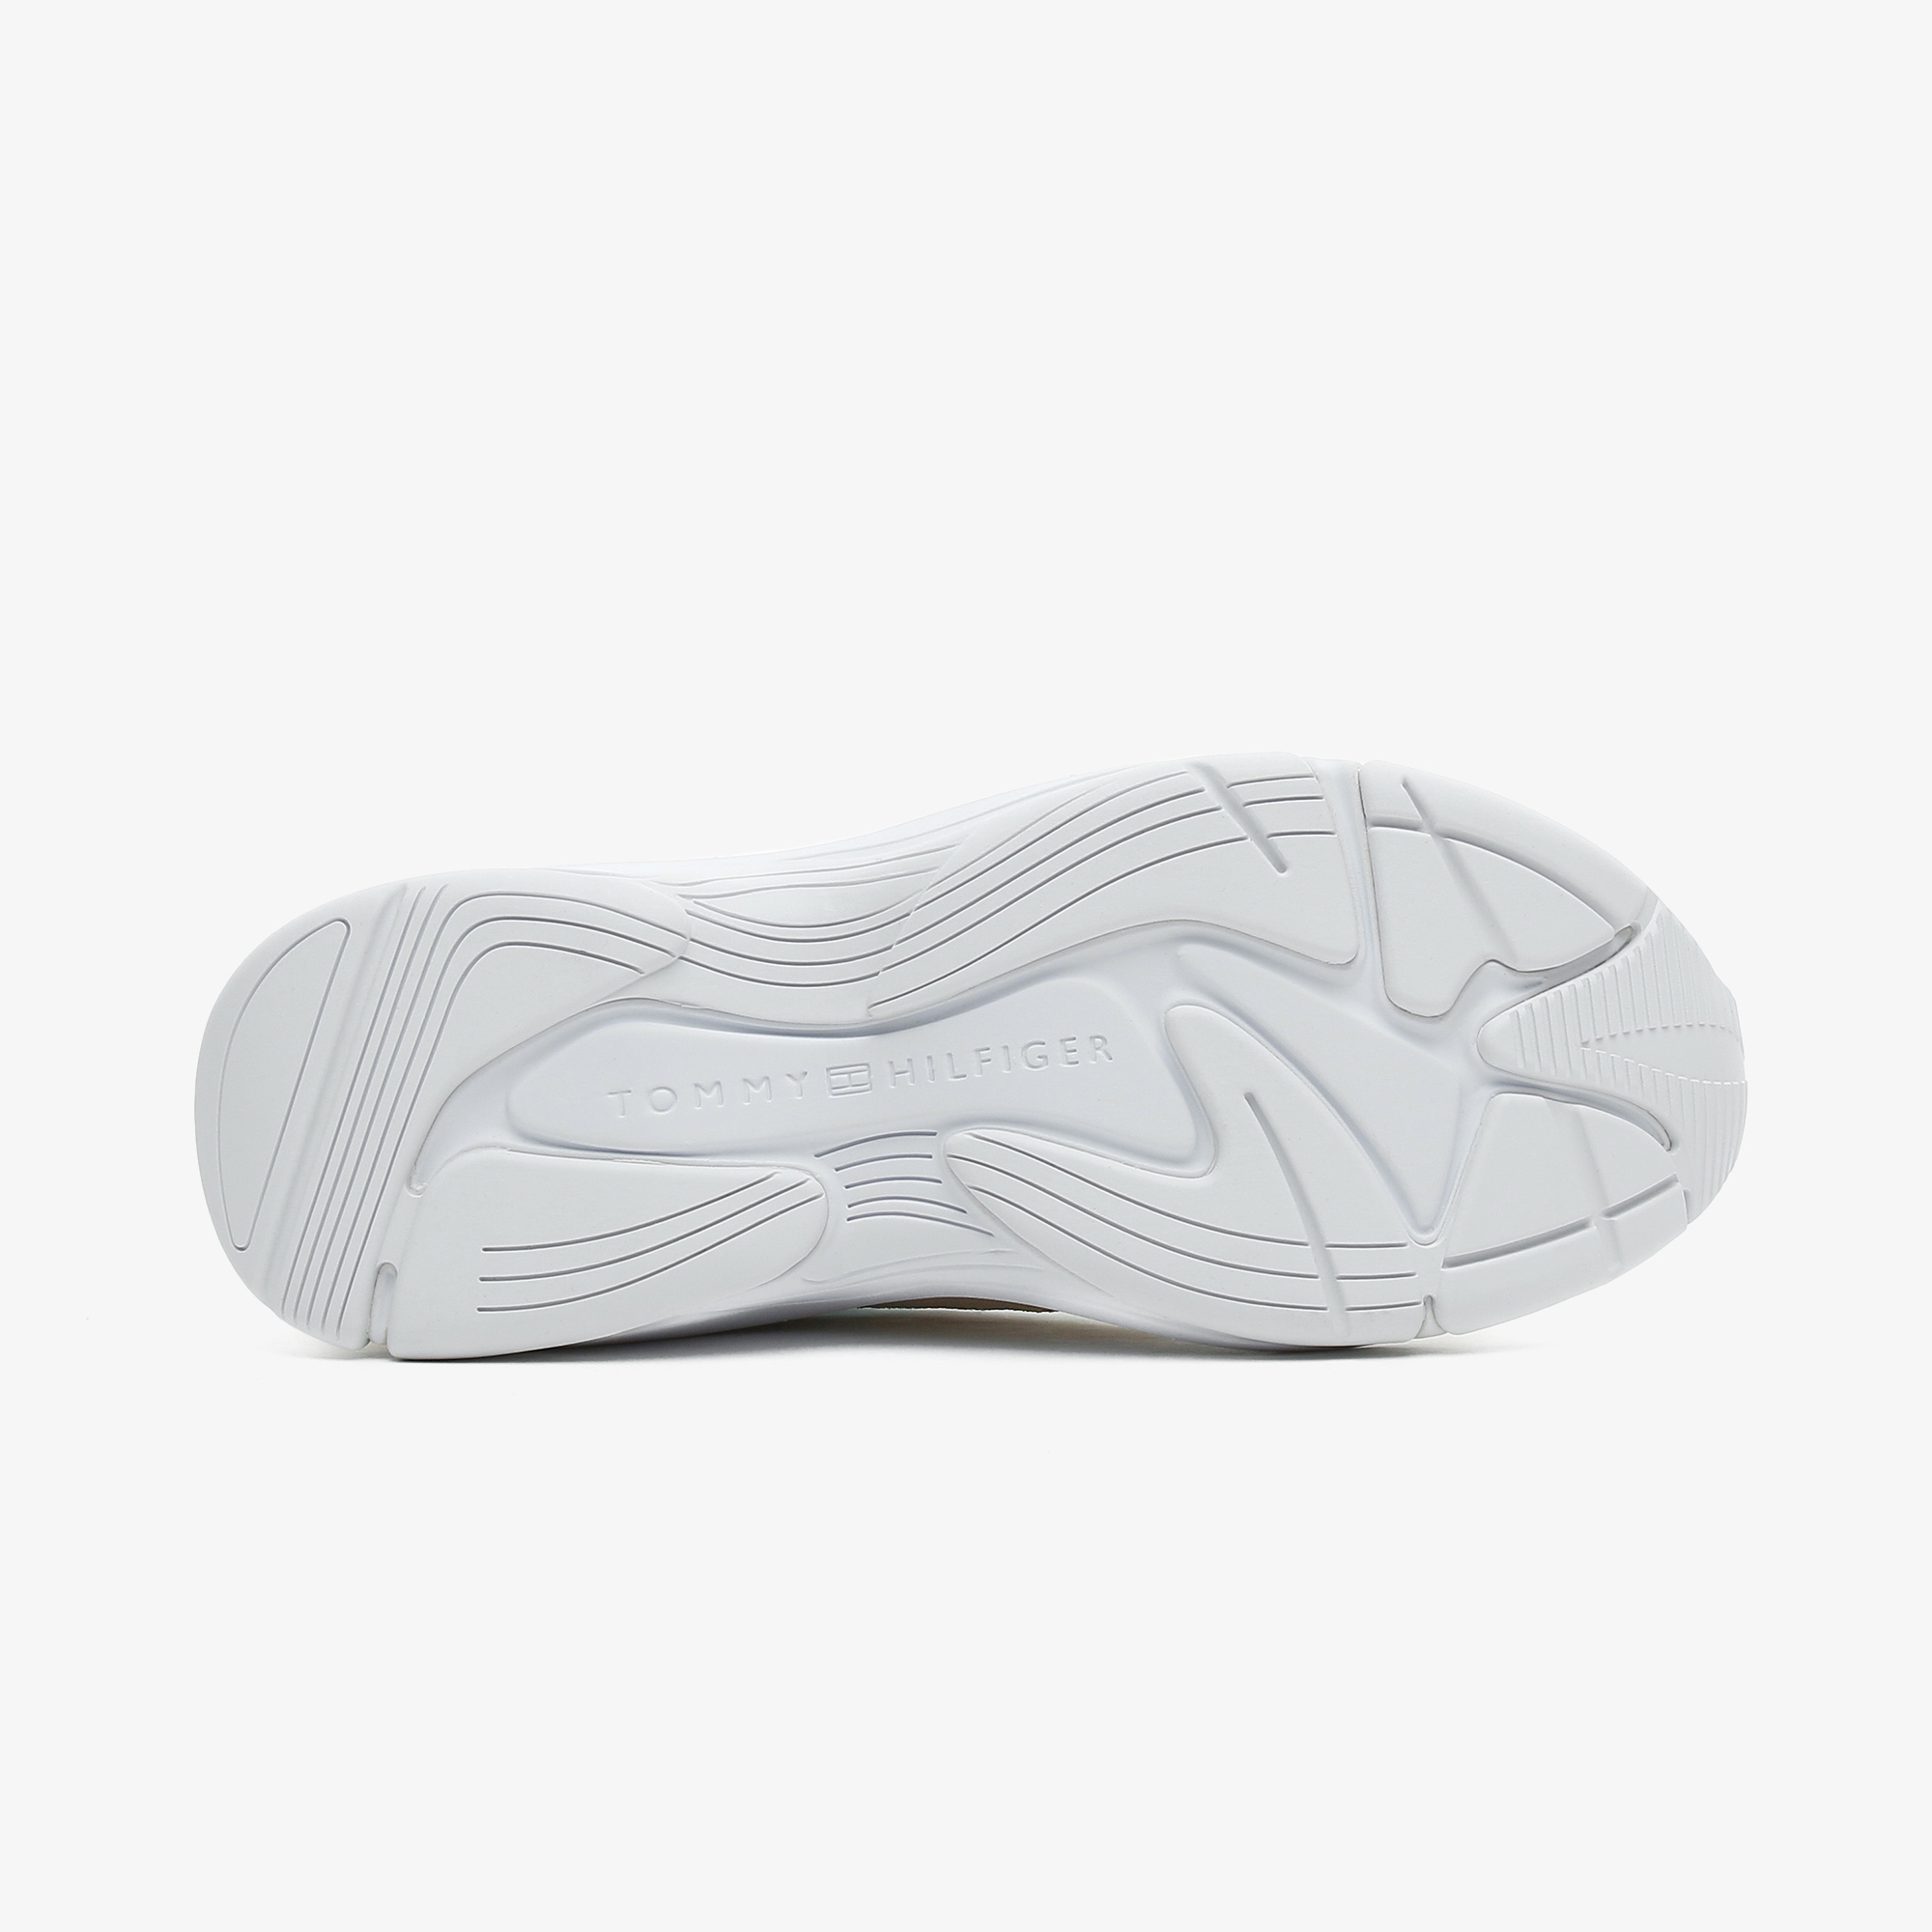 Tommy Hilfiger Fashion Wedge Kadın Beyaz Spor Ayakkabı